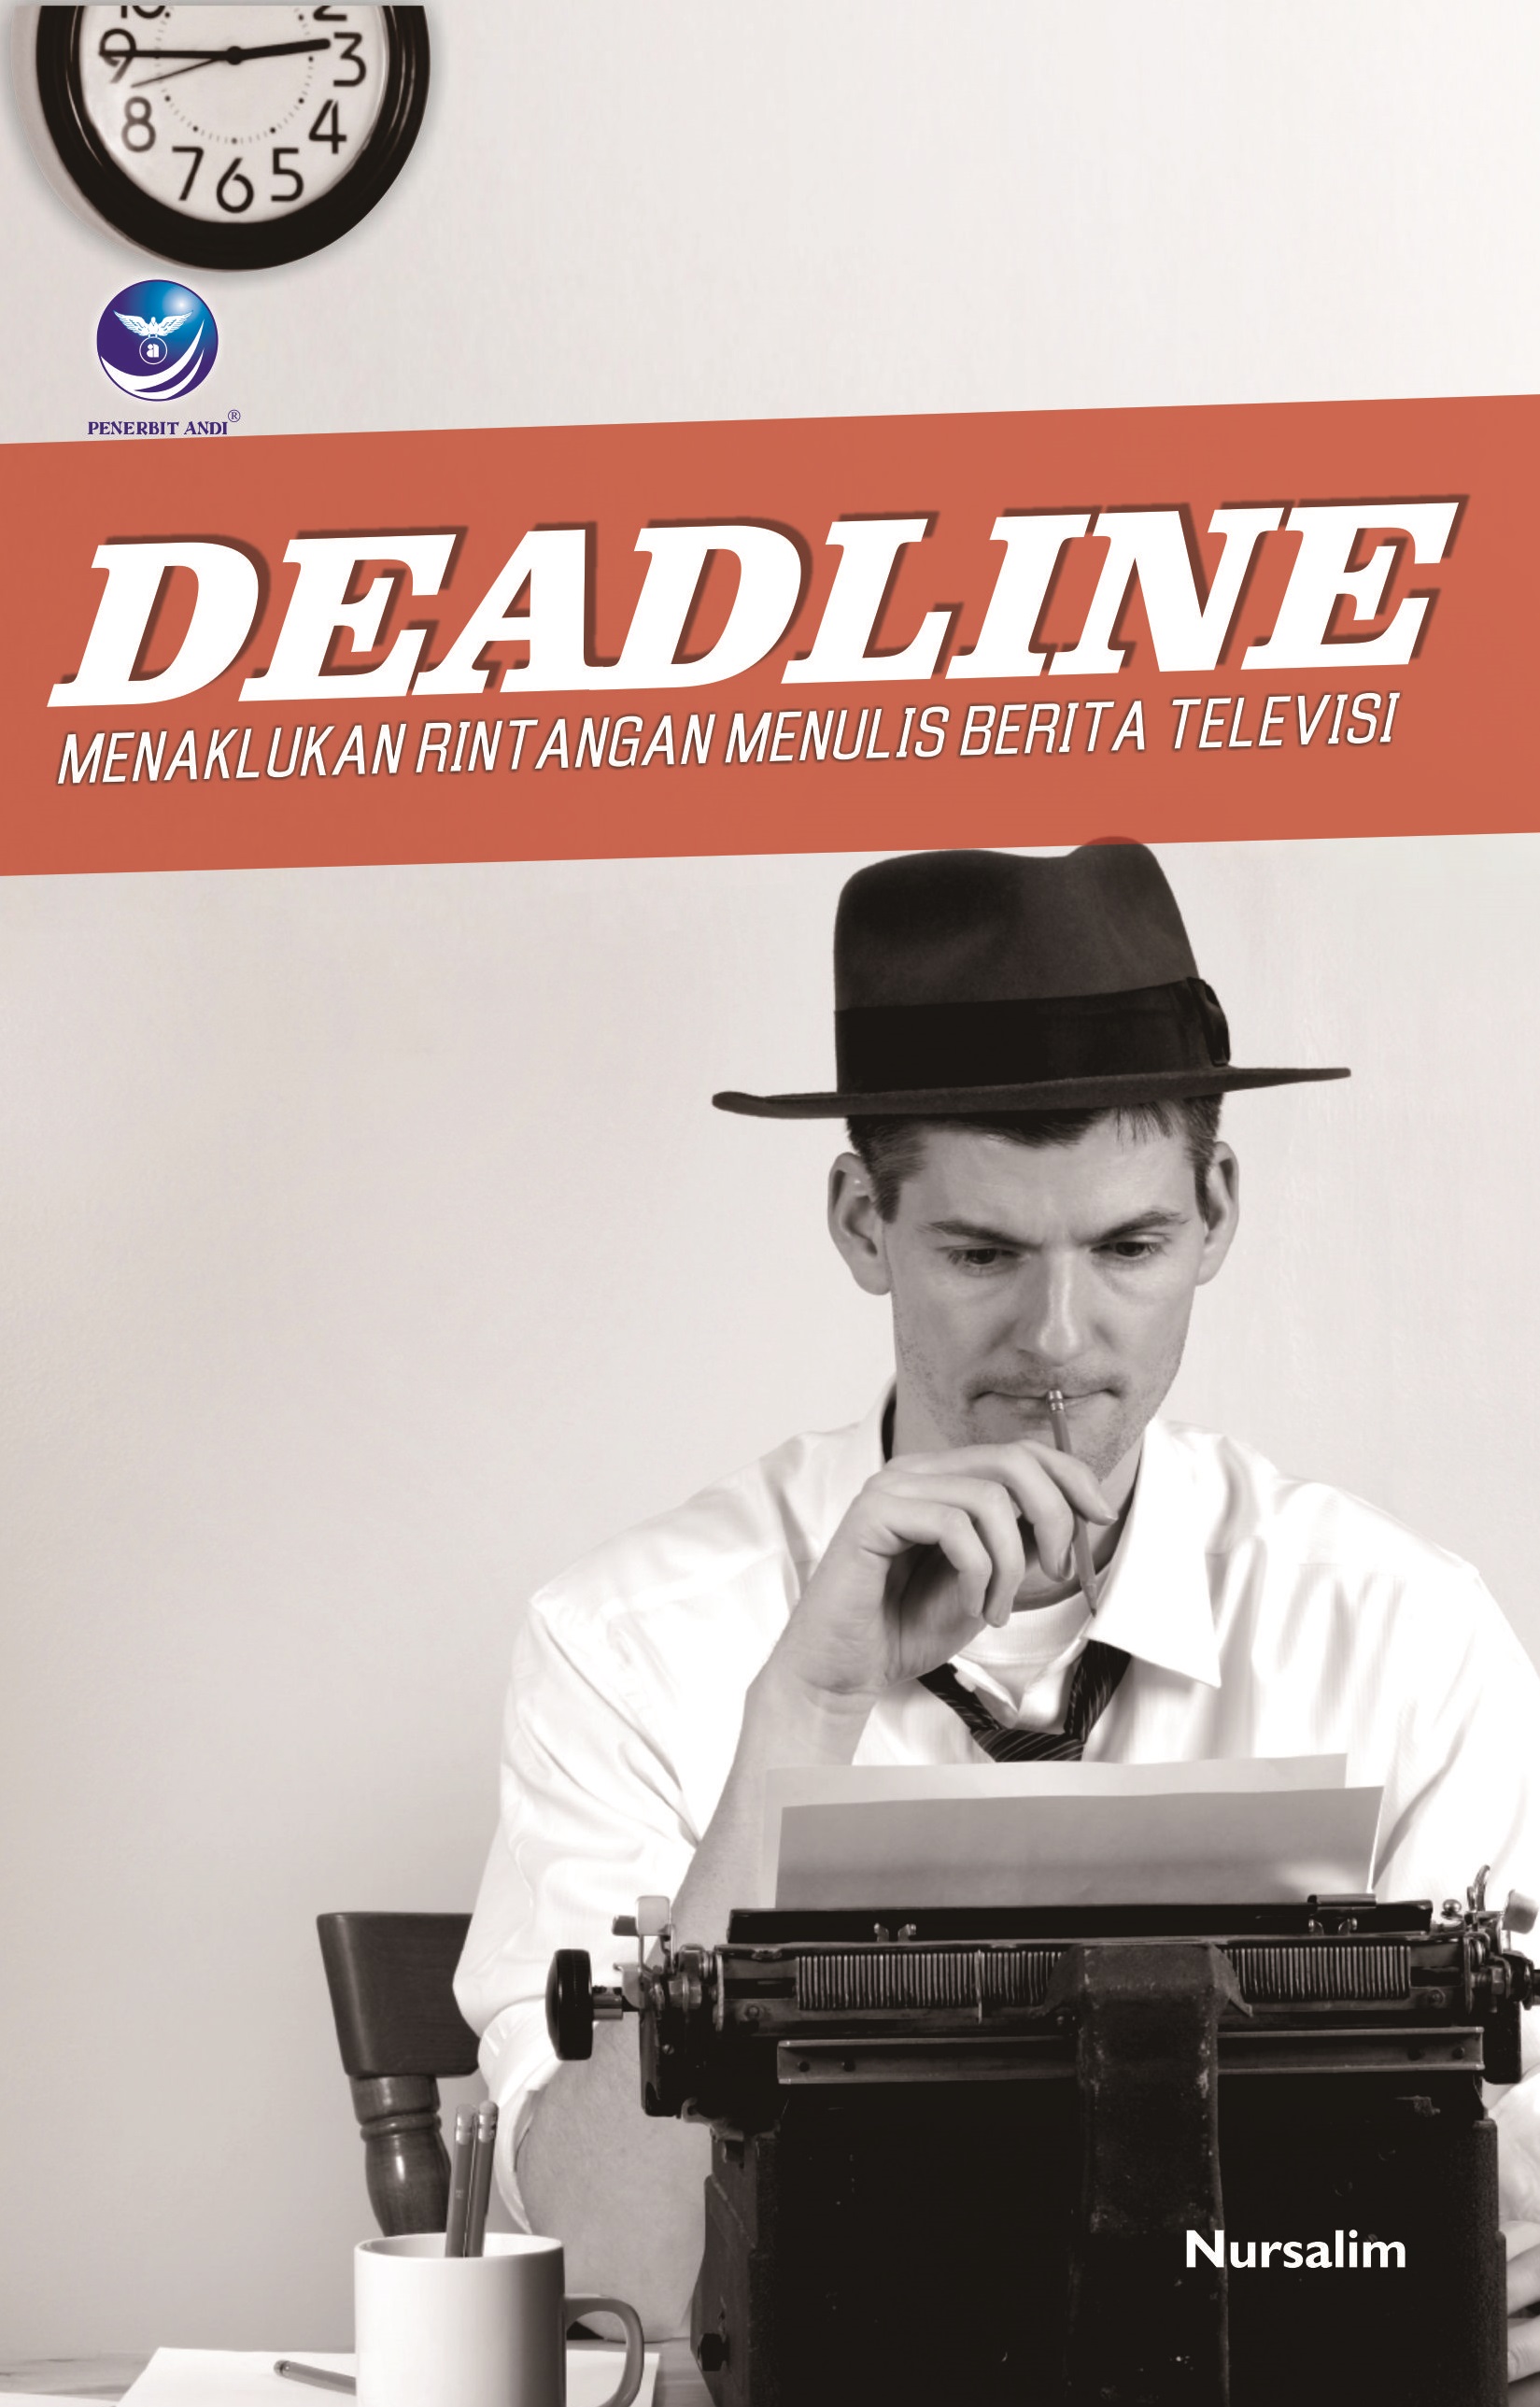 Deadline, menaklukan rintangan menulis berita televisi [sumber elektronis]